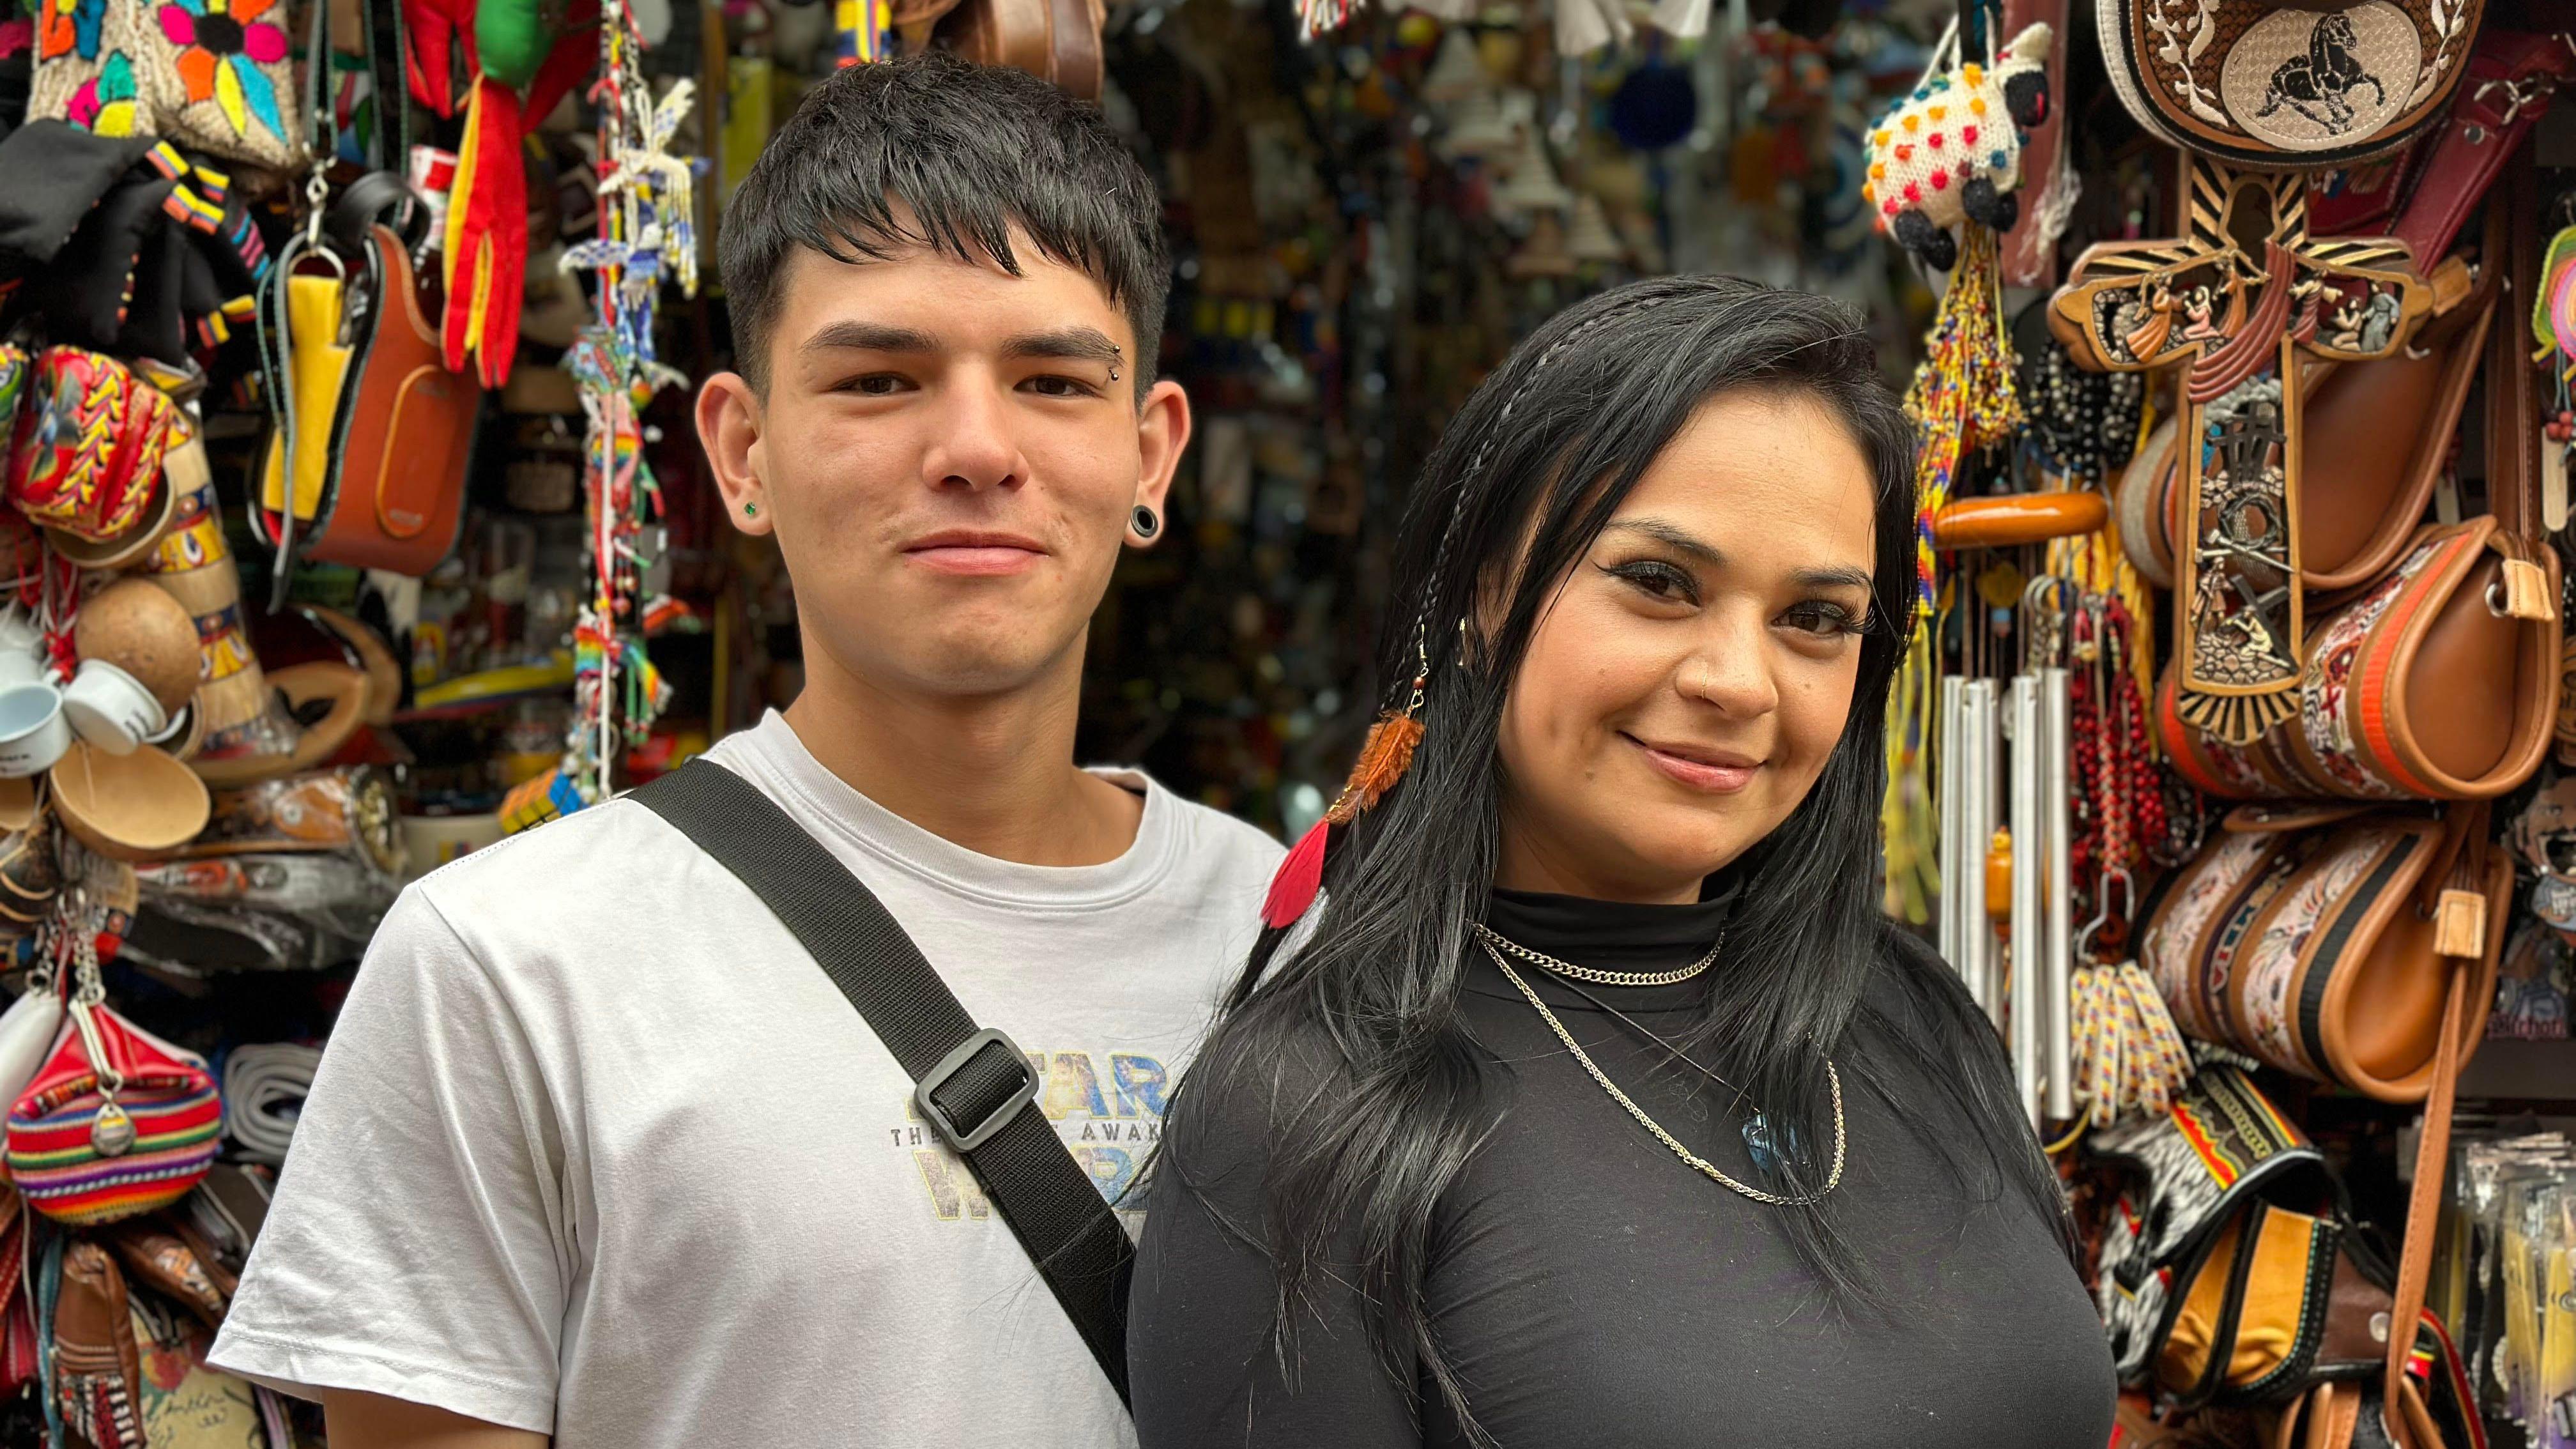 Los colombianos Santiago Rojas y Carolina Ocampo usan el 'qué pena con usted' a diario y "sin ser conscientes" en su negocio en el centro histórico de Bogotá.  JOSÉ CARLOS CUETO / BBC MUNDO